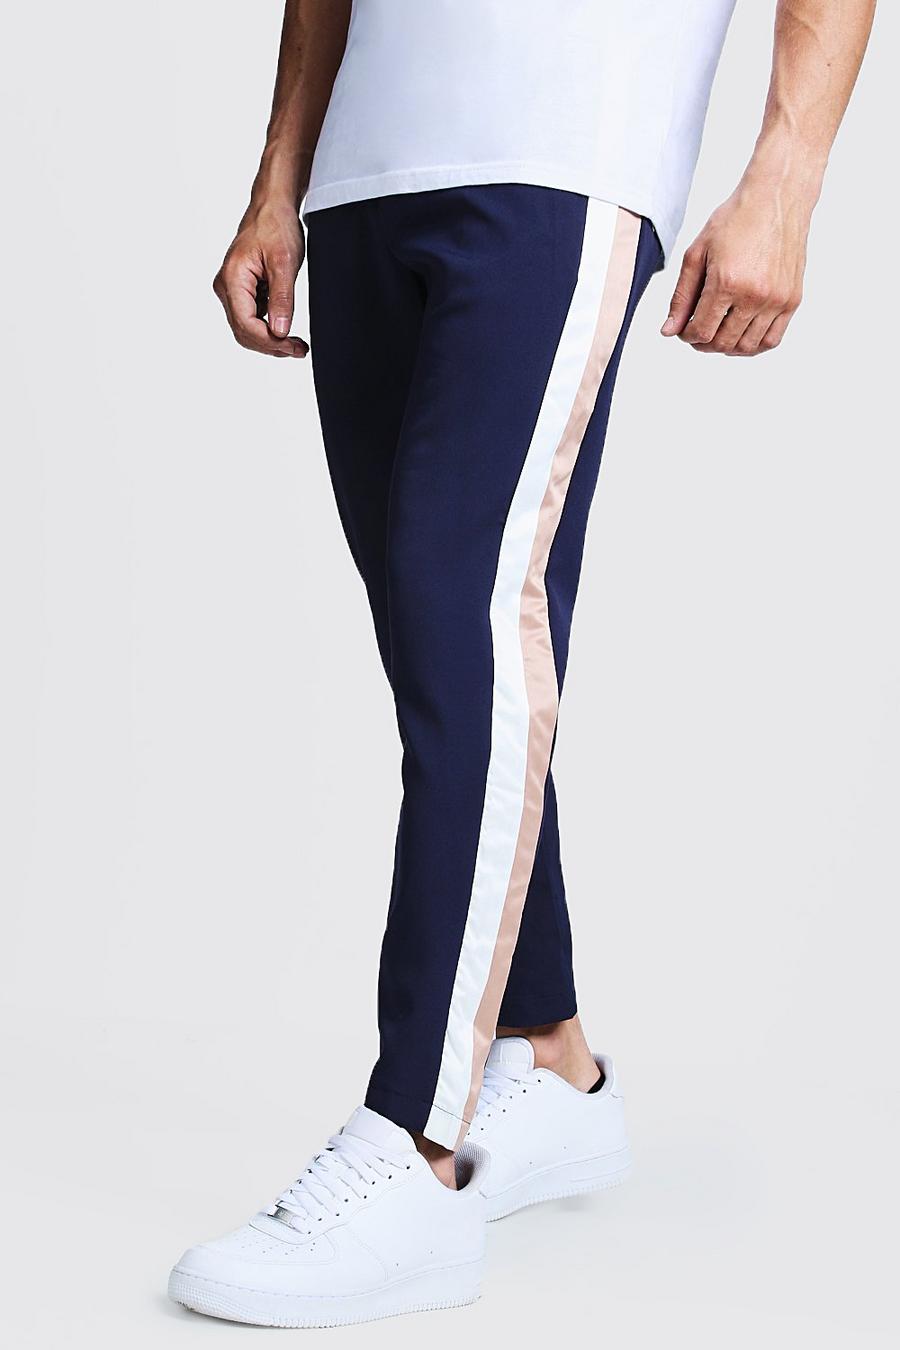 Pantalones azul marino con raya lateral image number 1